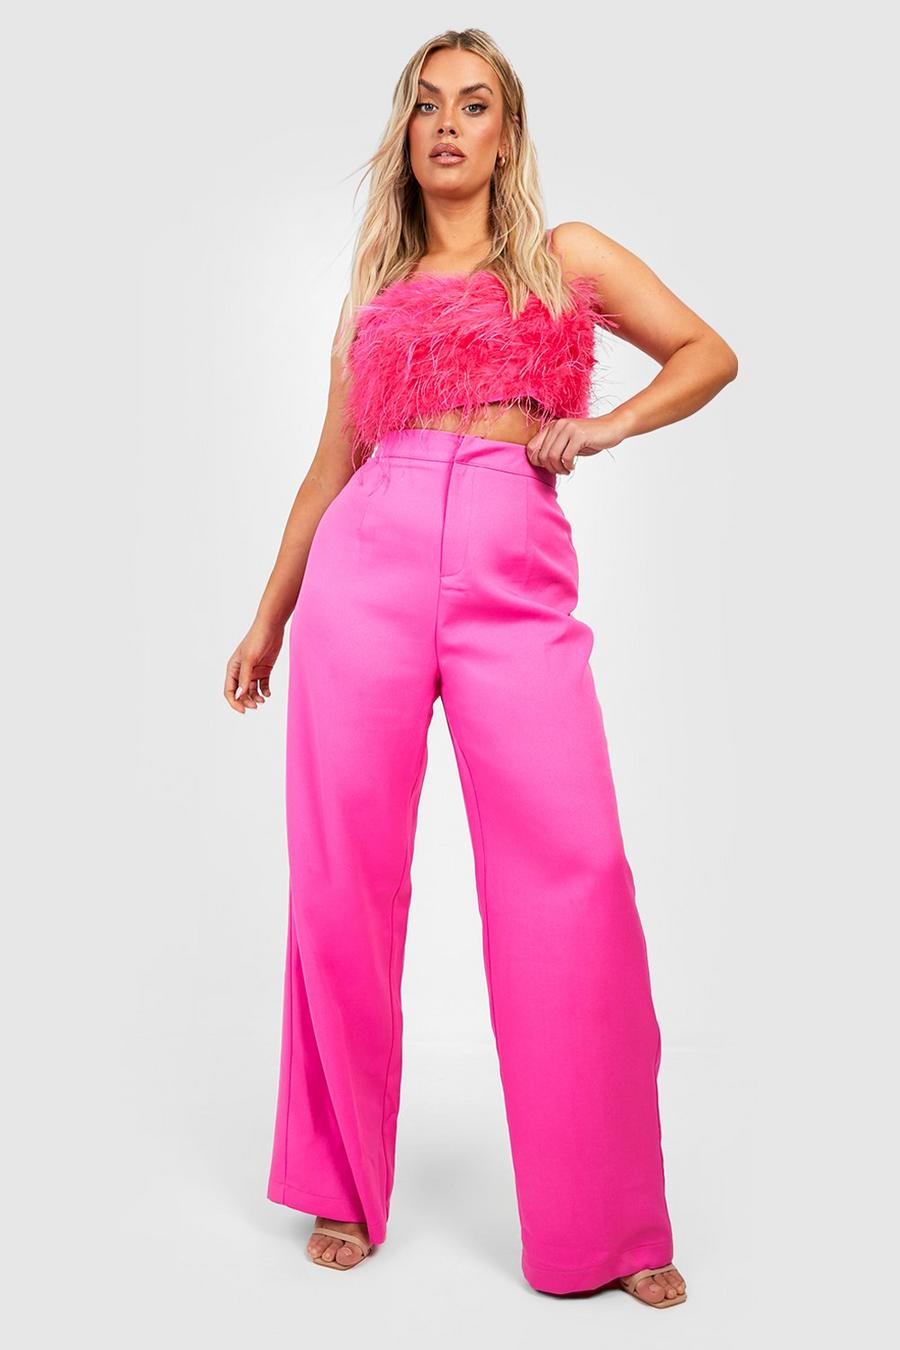 Pantalones Plus entallados, Hot pink